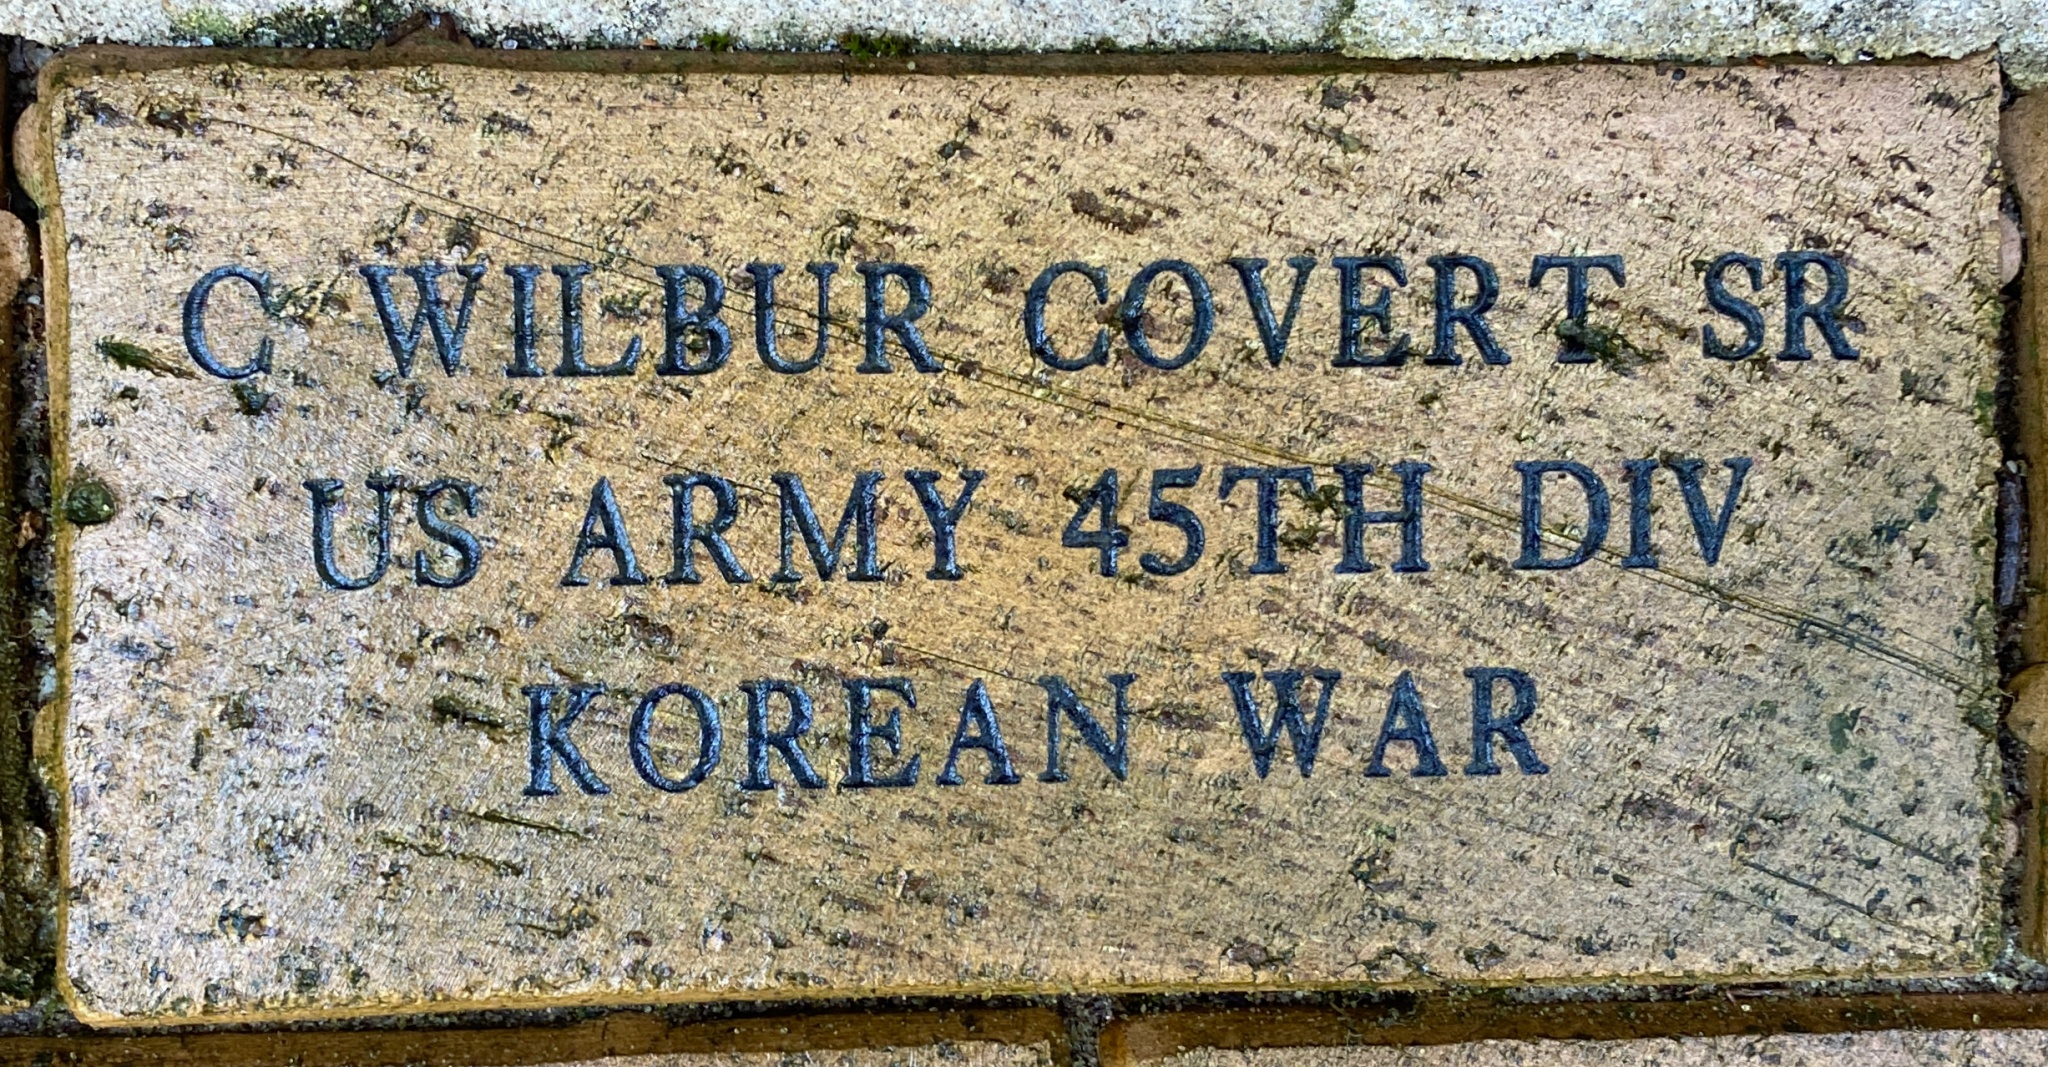 C. WILBUR COVERT SR US ARMY 45TH DIV KOREAN WAR